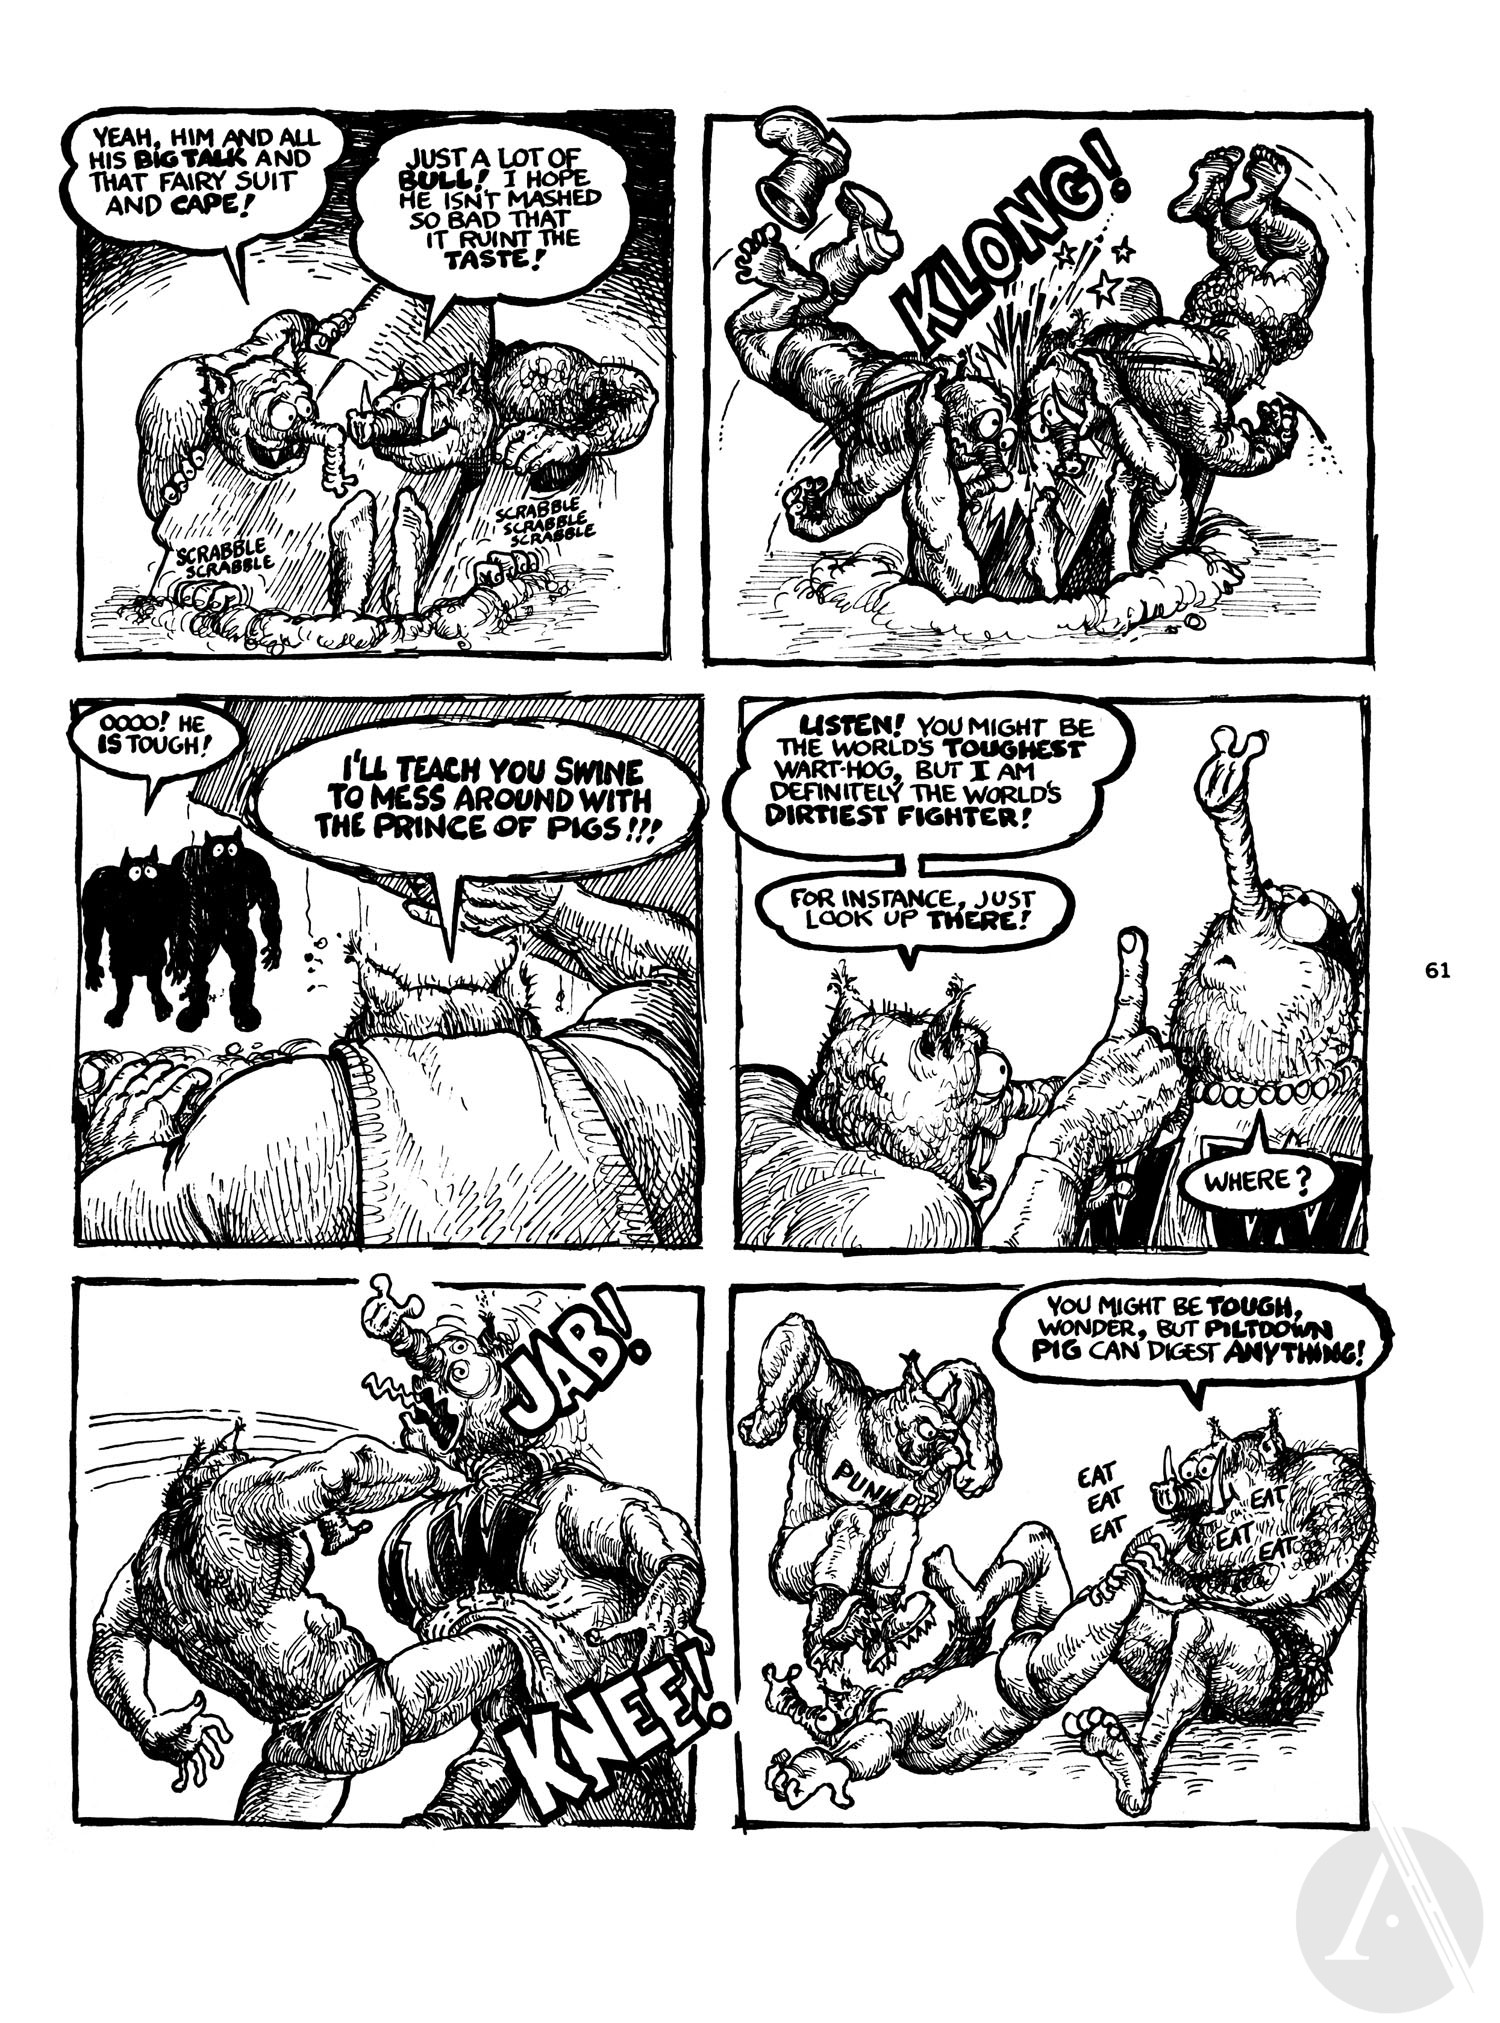 Read online Wonder Wart-Hog comic -  Issue #1 - 61